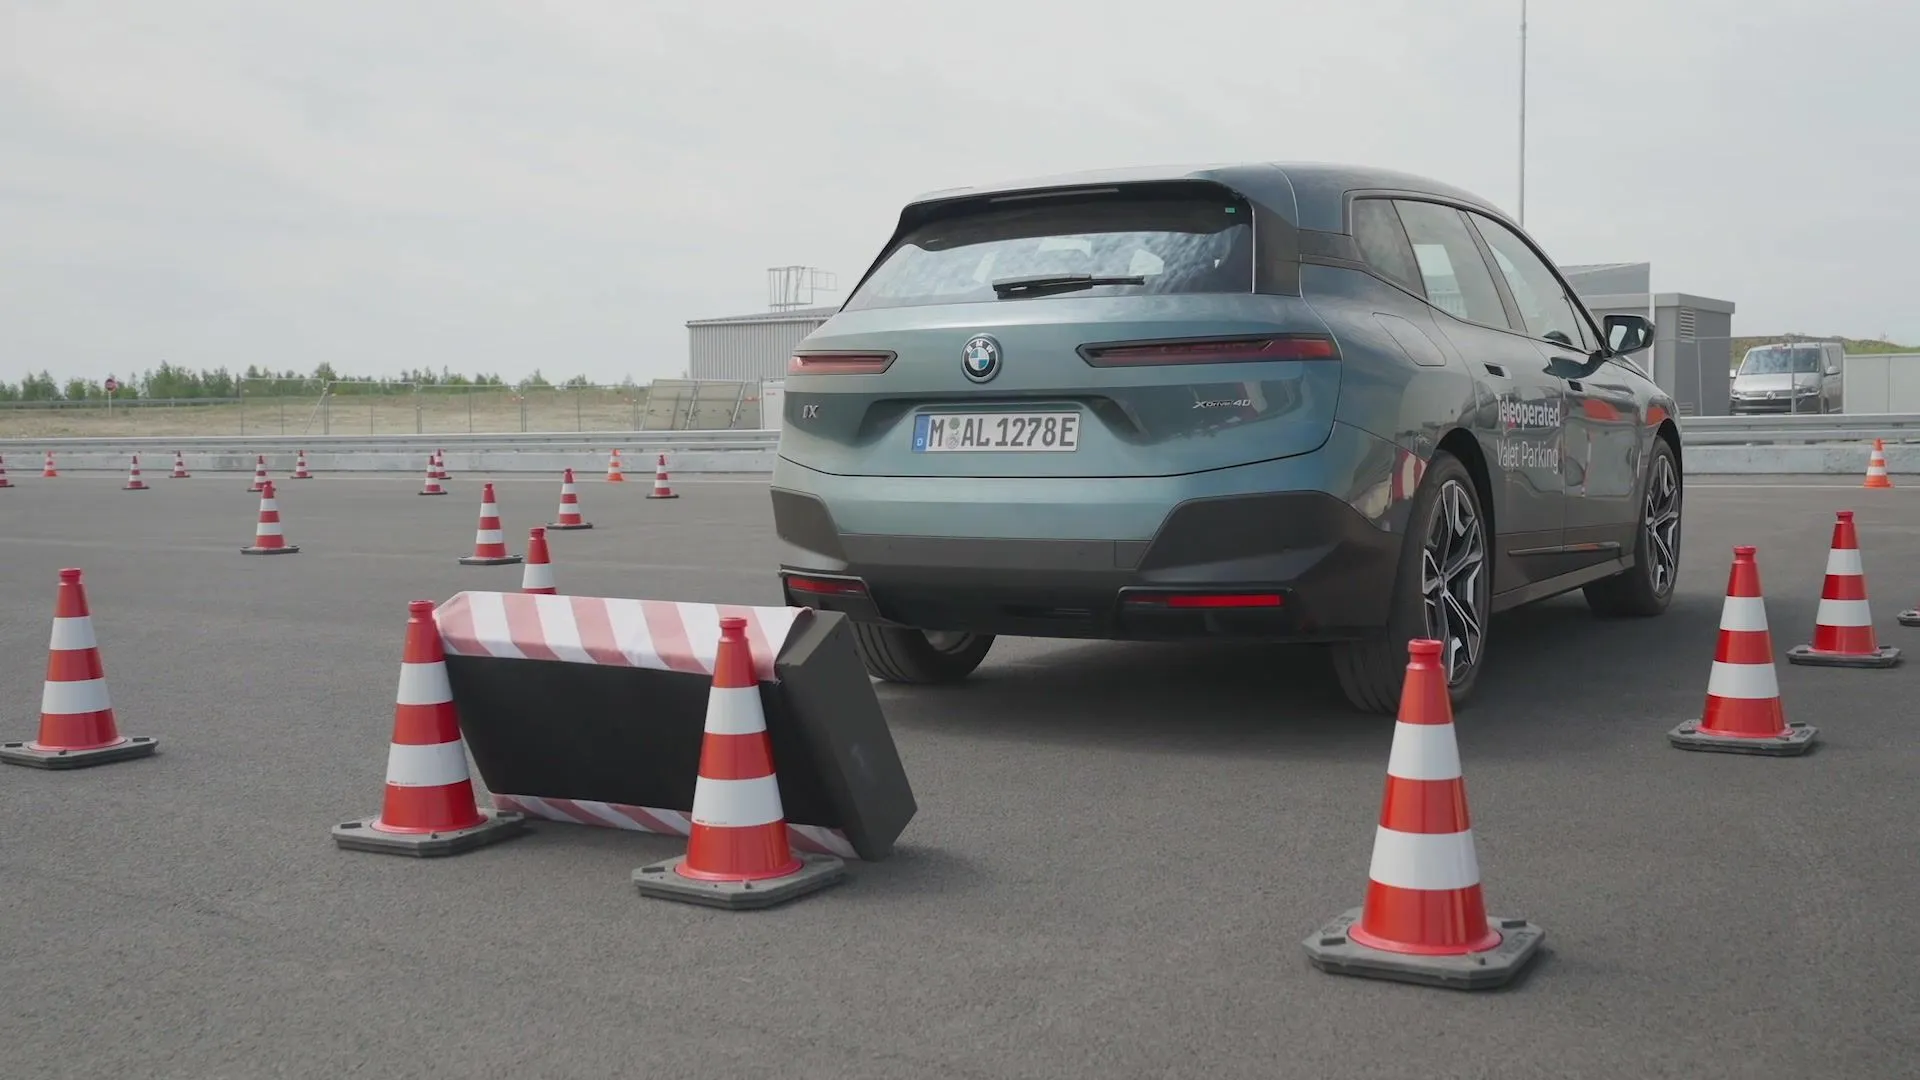 BMW Gemeinschaftliches Entwicklungsprojekt mit Valeo ermöglicht ferngesteuertes Valet-Parken